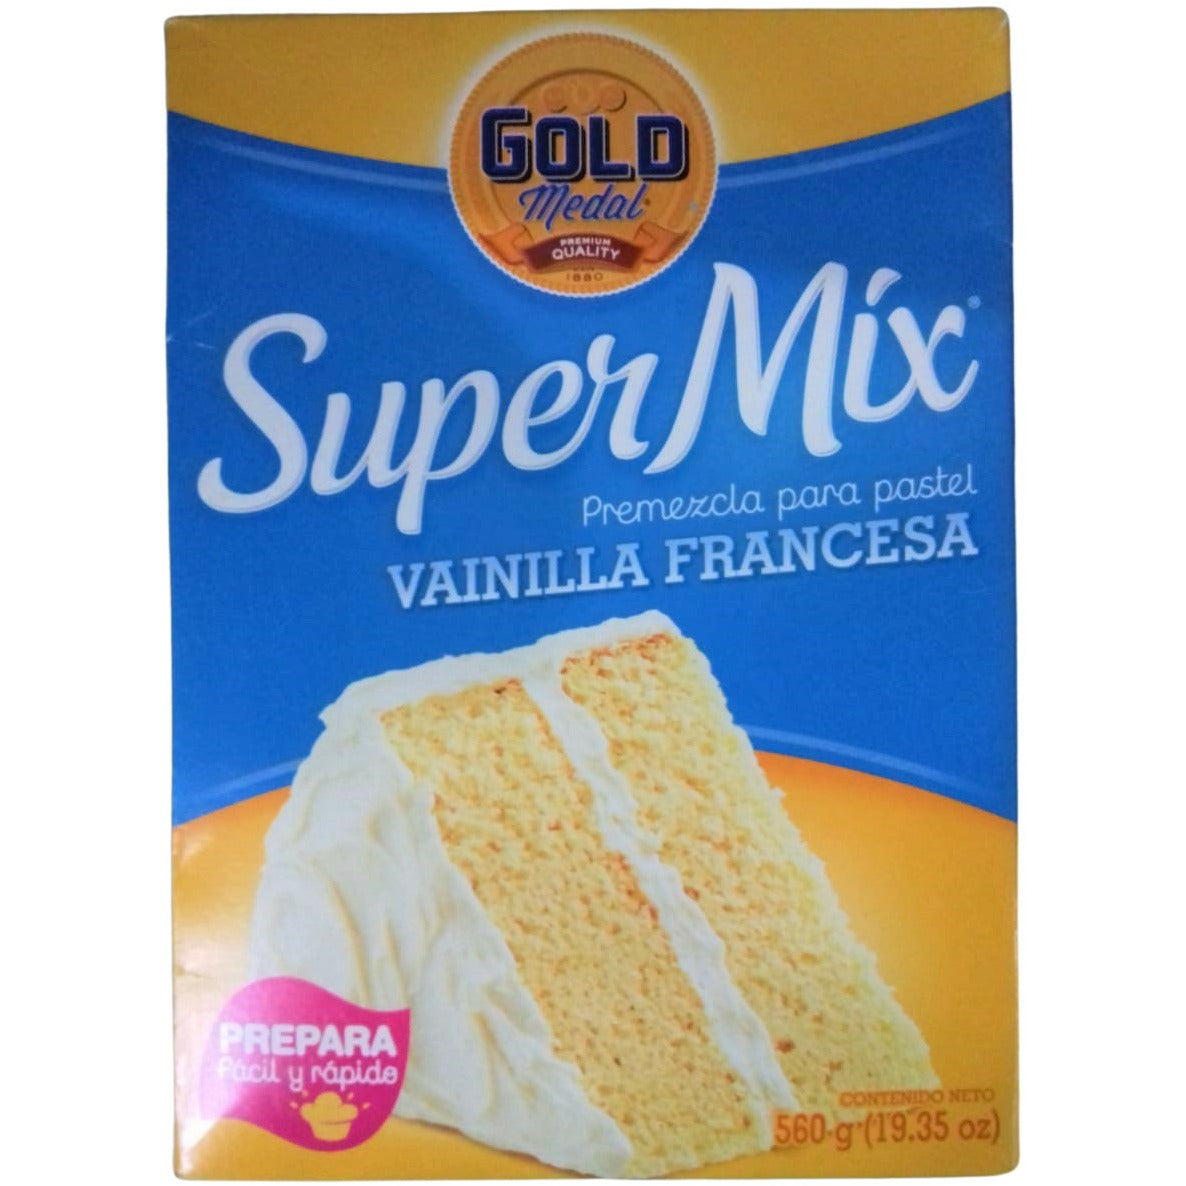 Premezcla para Pastel Gold Medal, Super Mix Vainilla Francesa, 560 gra –  Mercadito 502